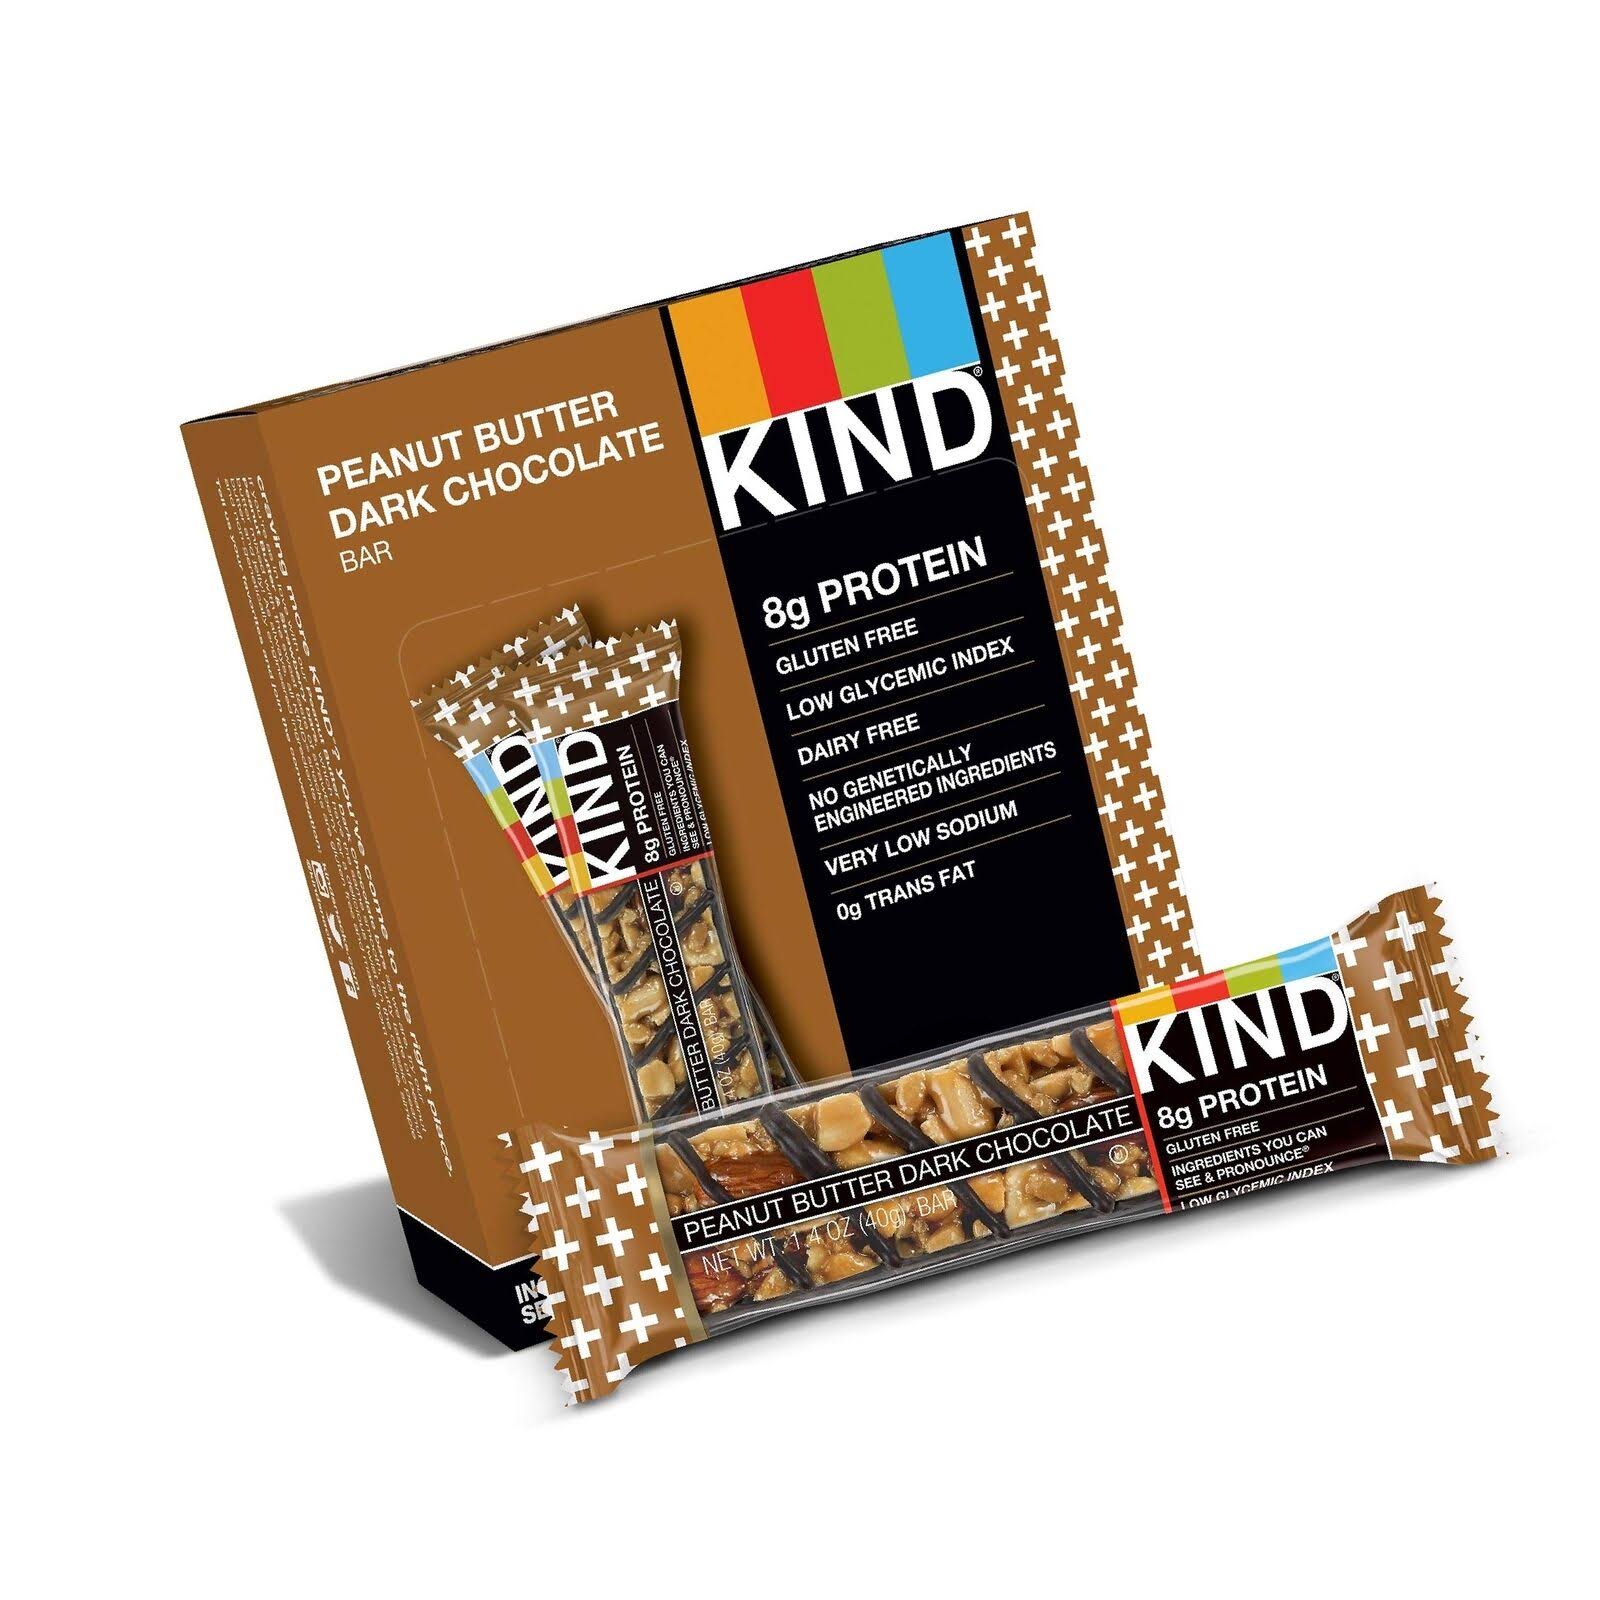 Kind Plus Protein Gluten Free Bars - Peanut Butter Dark Chocolate, 1.4oz